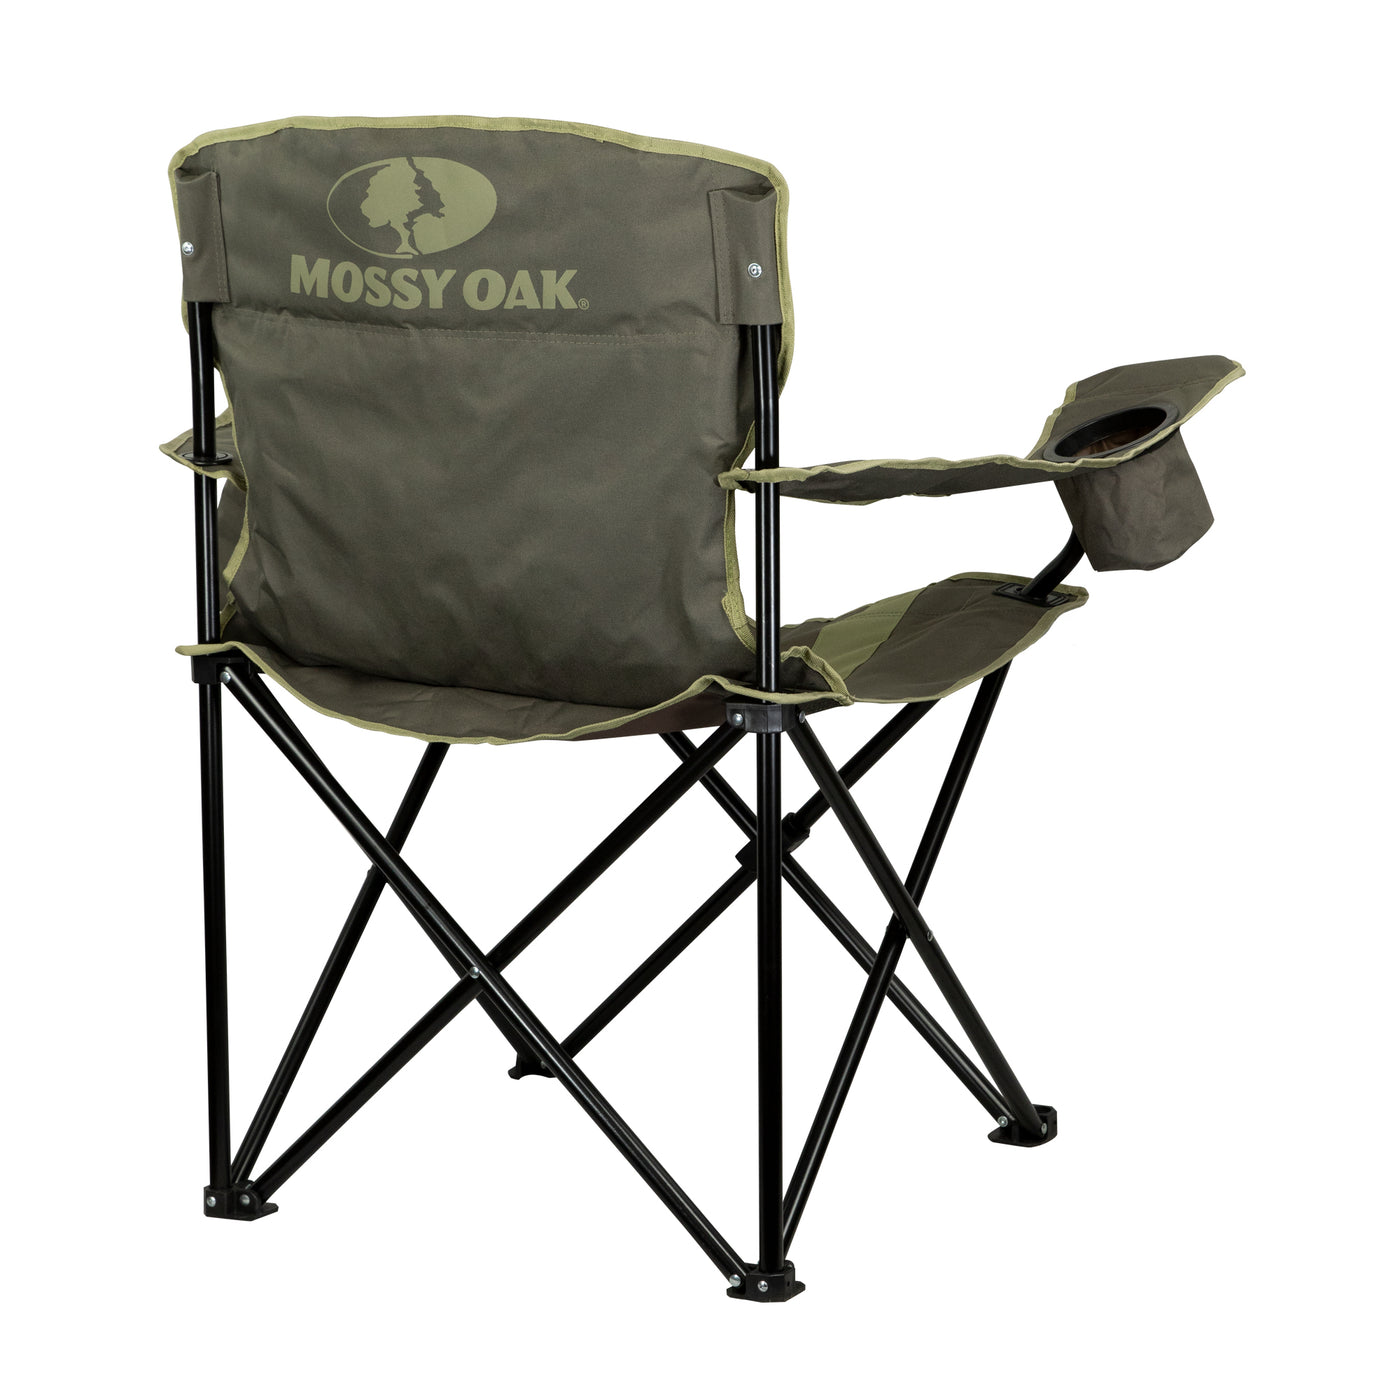 Mossy Oak Deluxe Folding Chair Back View 